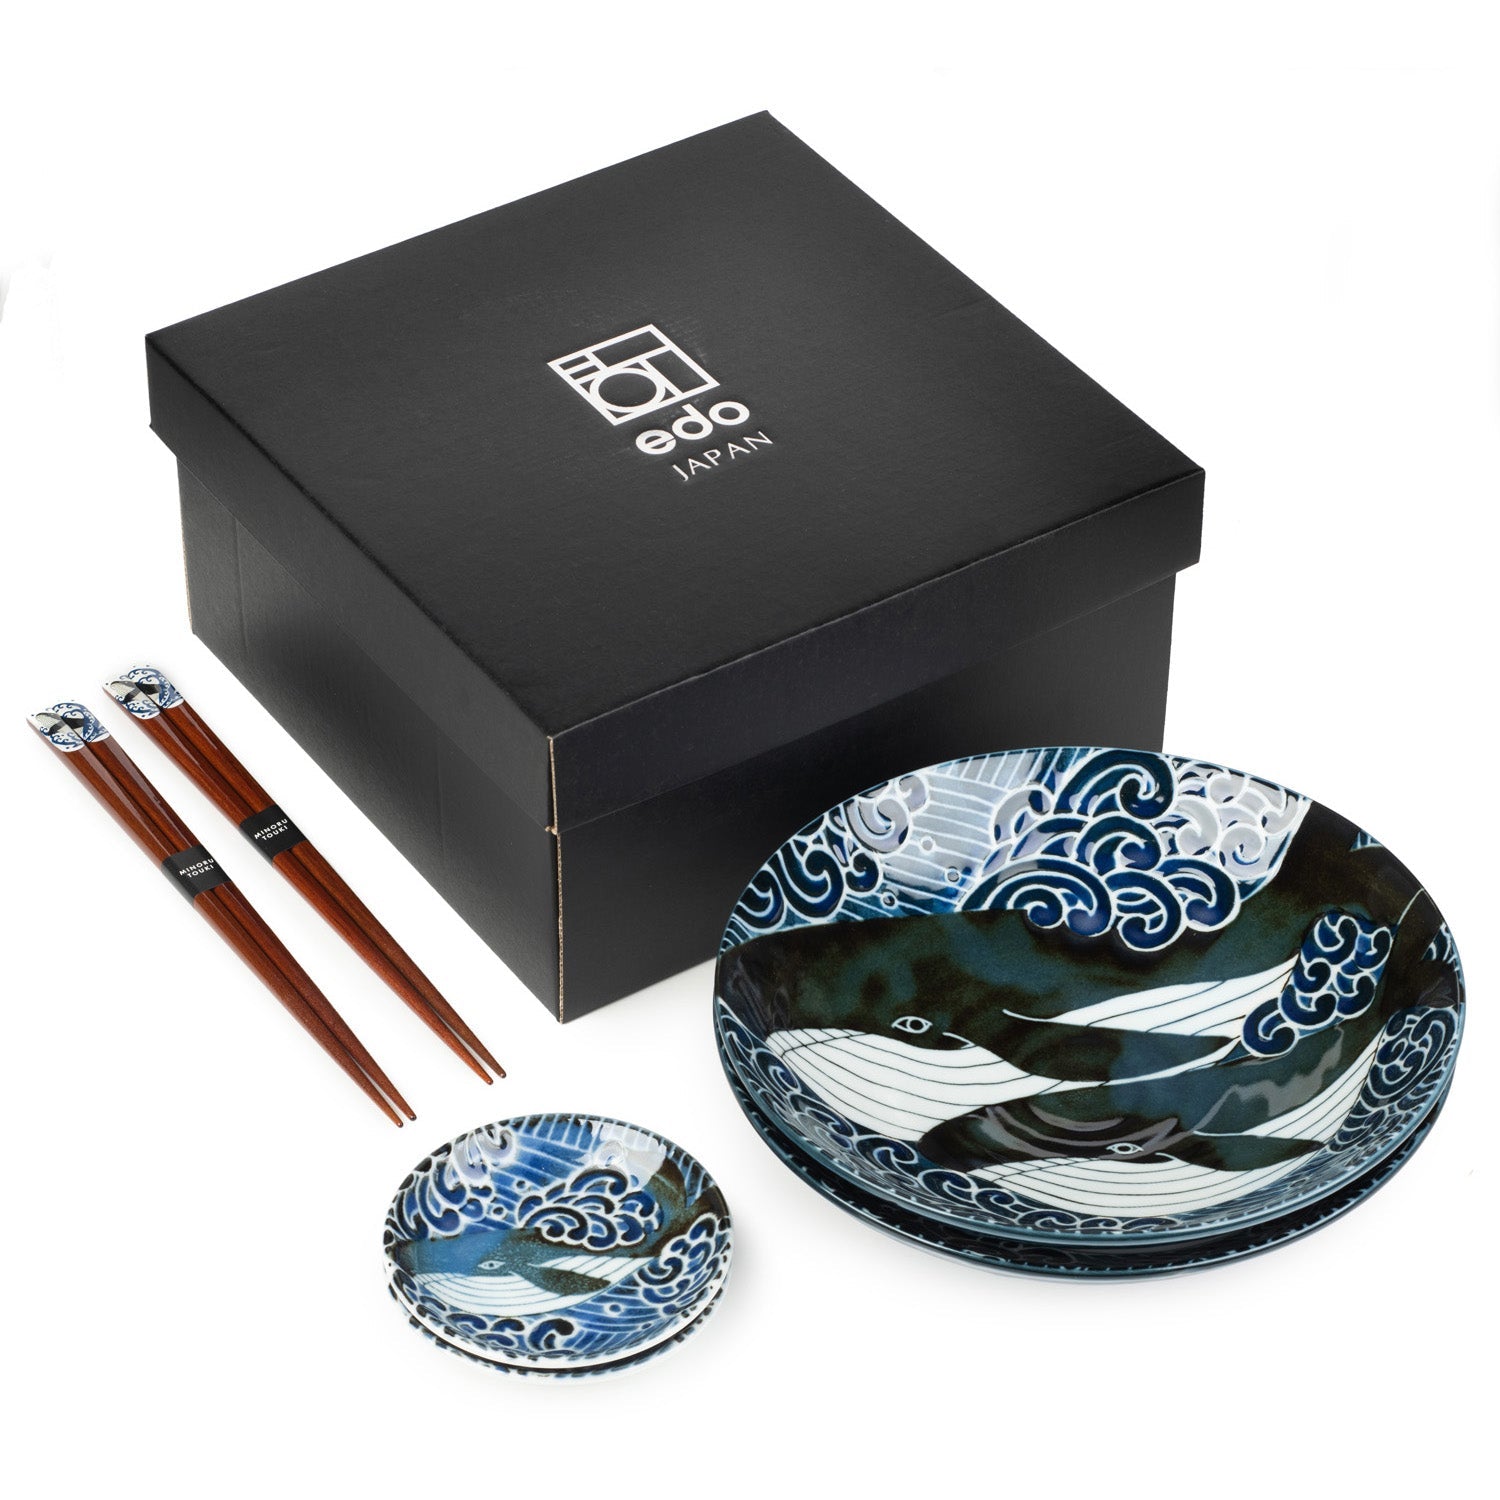 Whale Indigo Blue Ceramic Japanese Bowl Set and gift box